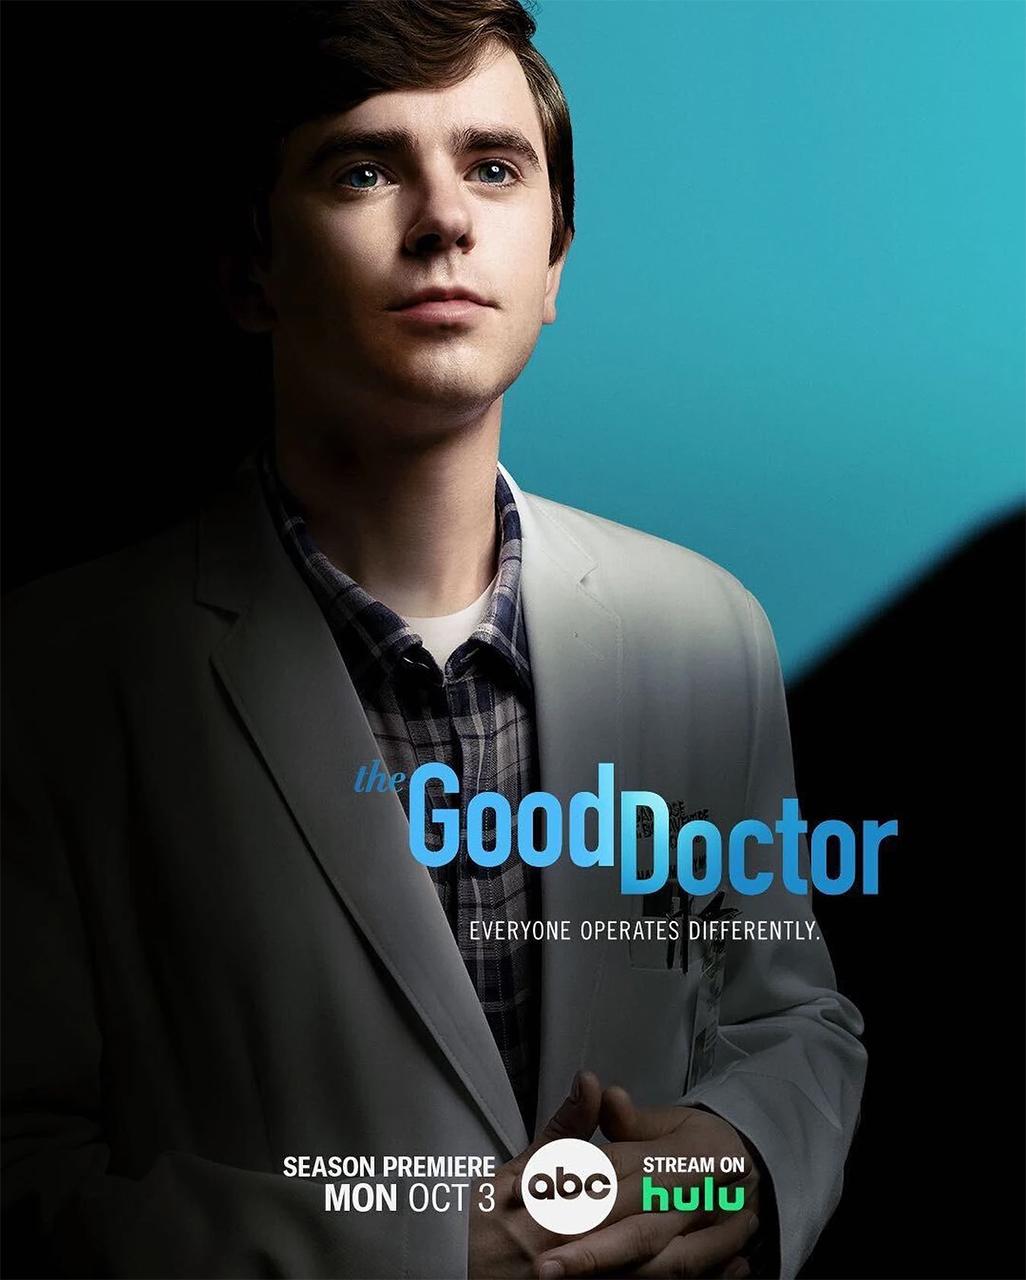 الطبيب الجيد - الملصق الرسمي للموسم 6